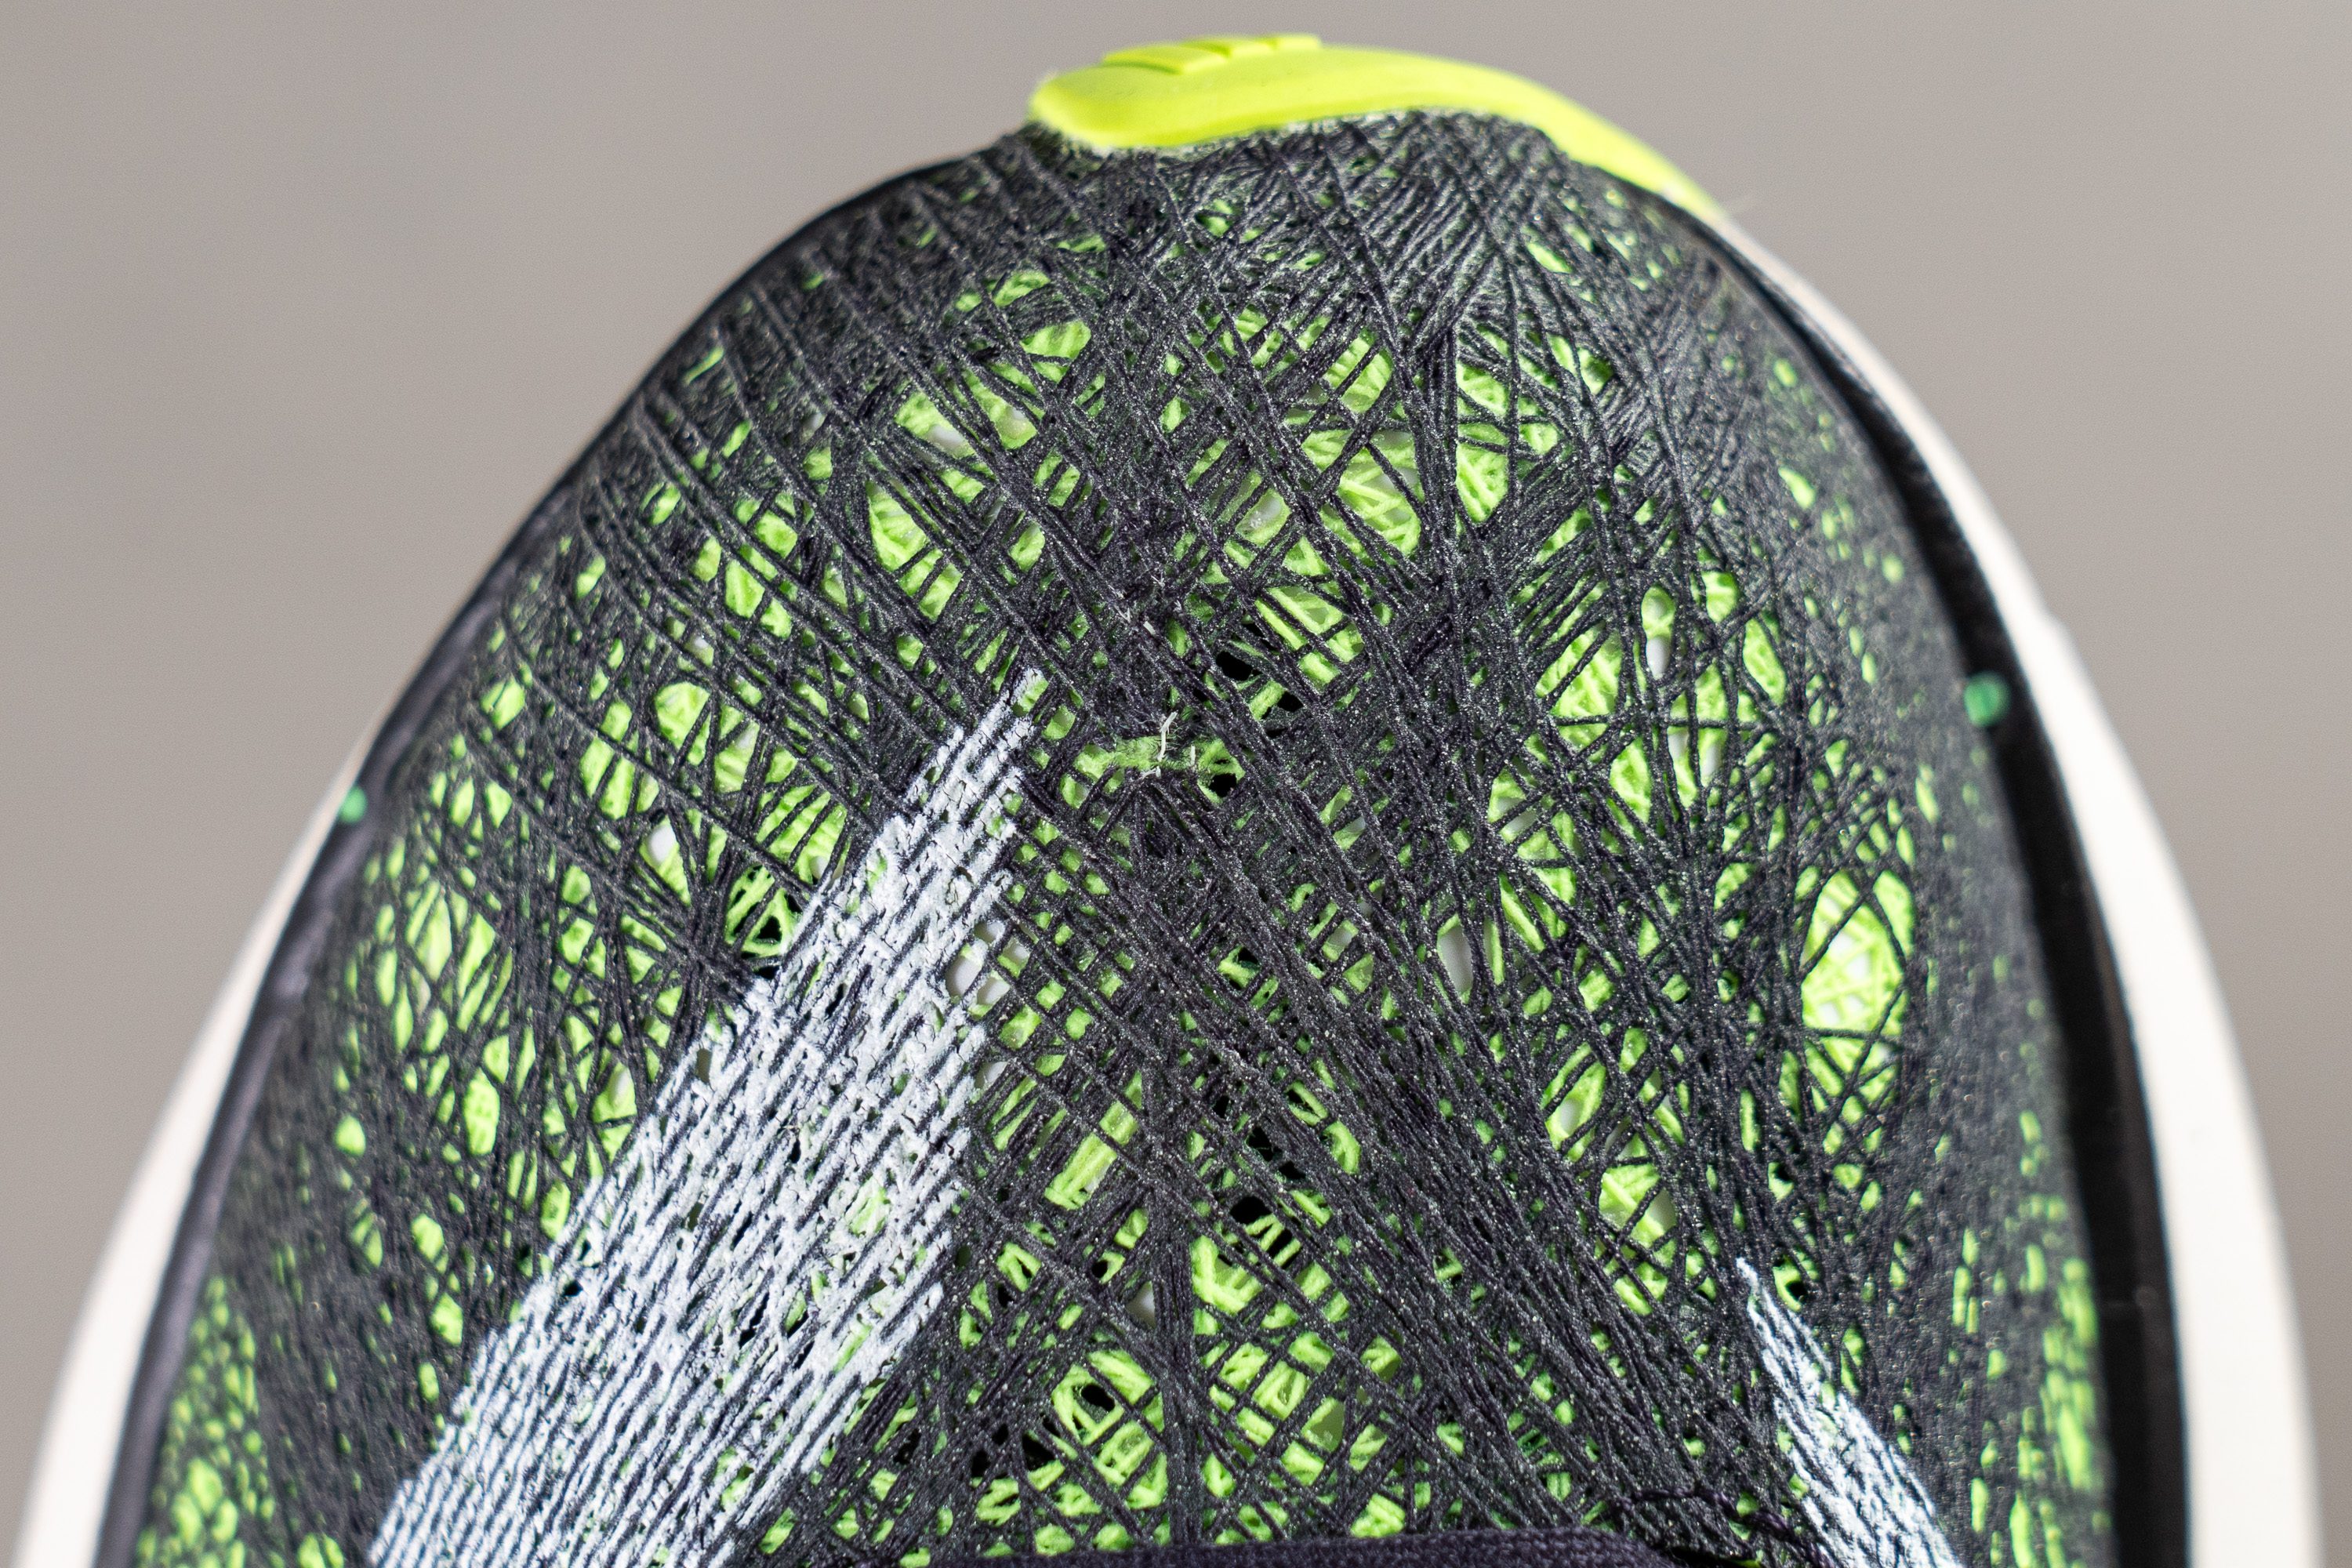 Adidas Hidden adidas ultra boost black solar orange Toebox durability